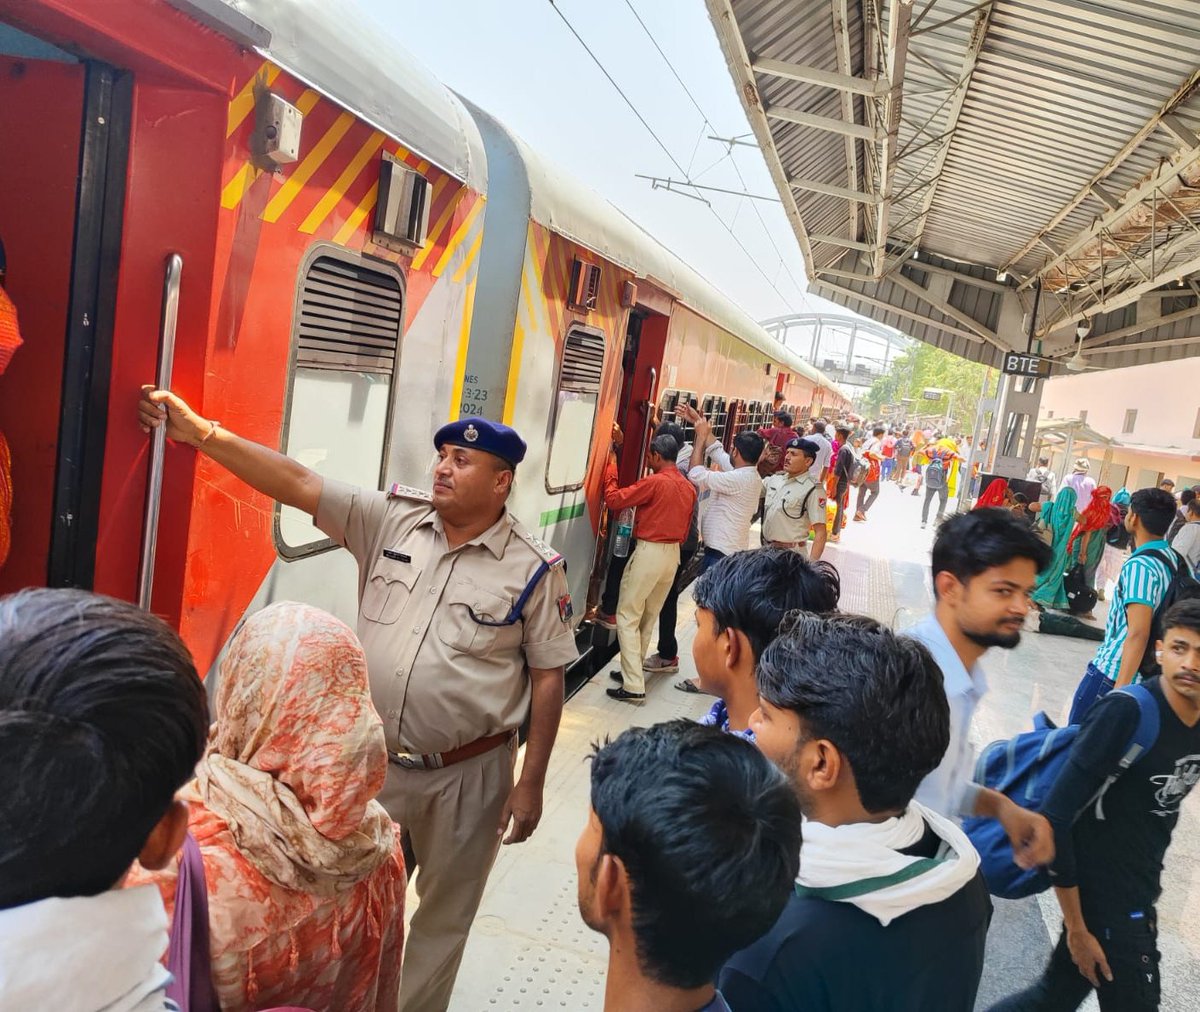 ग्रीष्म कालीन में अतिरिक्त भीड़ के चलते कोटा मंडल के भरतपुर जंक्शन स्टेशन पर सुविधाओं हेतू विशेष इंतजाम किये गये हैं , रेल सुरक्षा बल द्वारा रेल यात्रियों को समुचित जानकारी व सहायता प्रदान की जा रही है l